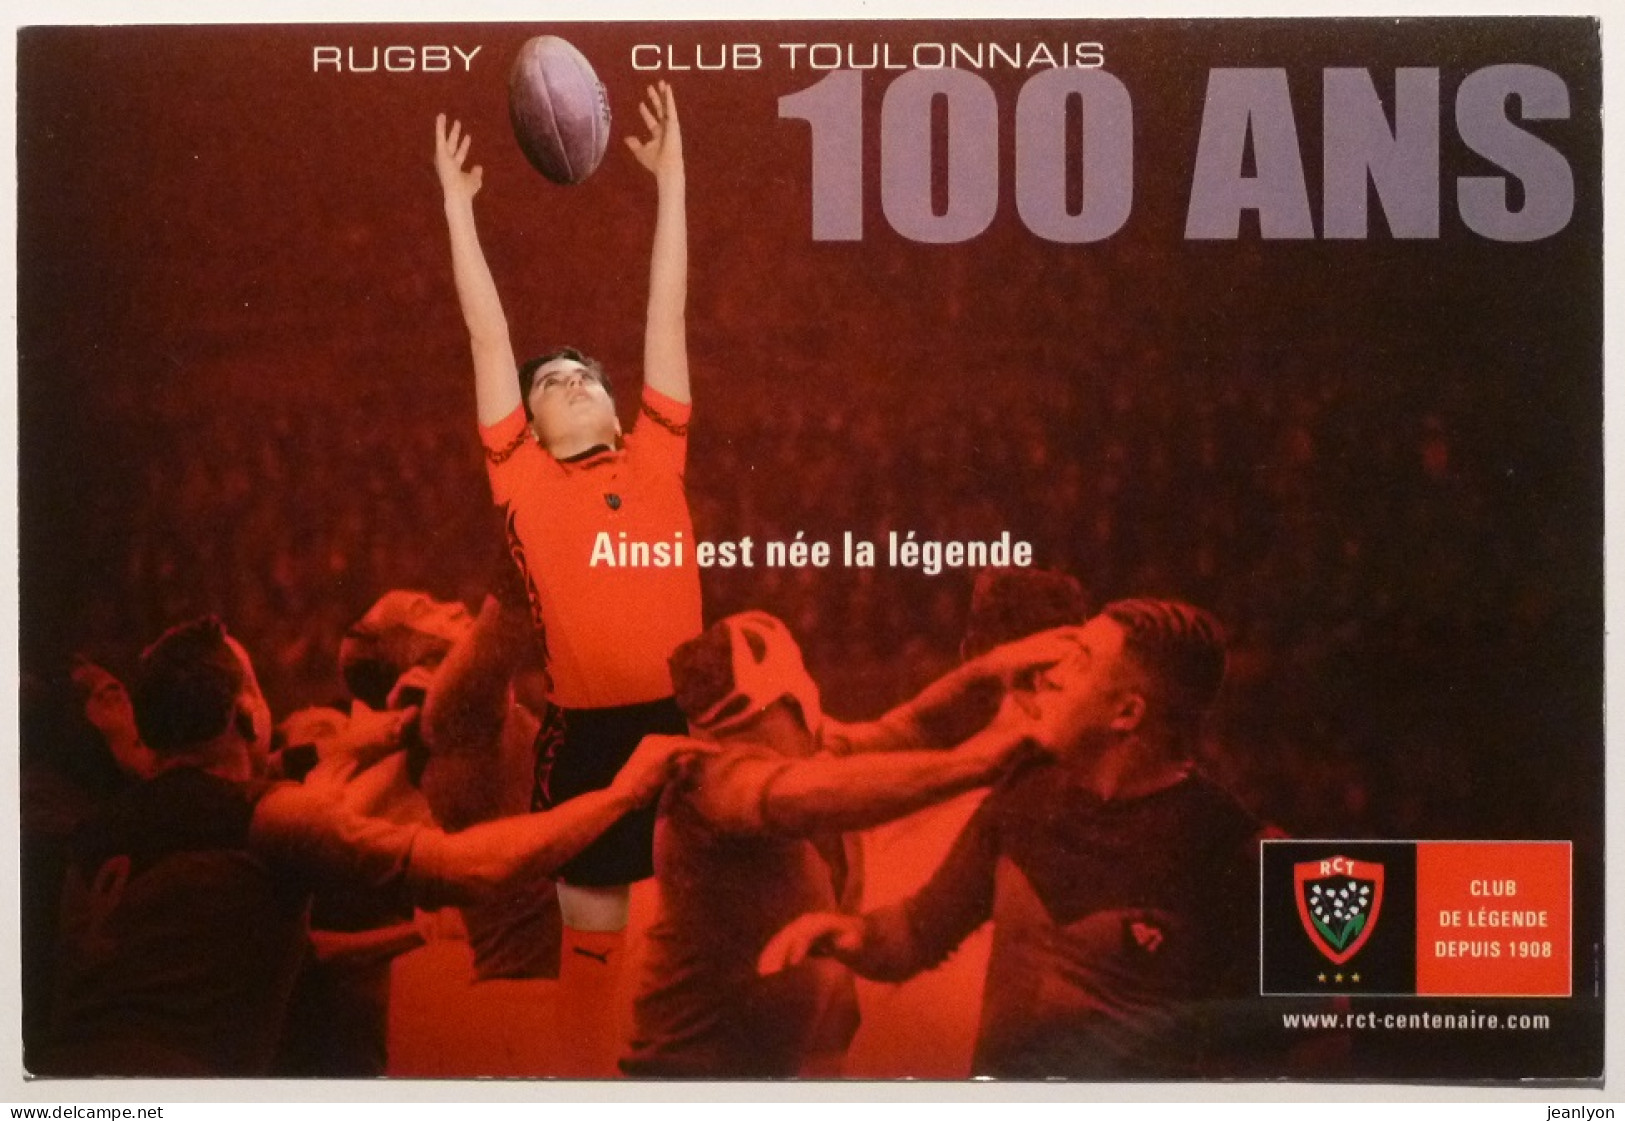 RUGBY - RCT TOULON / 100 ANS - Rugby Club Toulonais - Centenaire - Carte Publicitaire Poste Du Var - Rugby